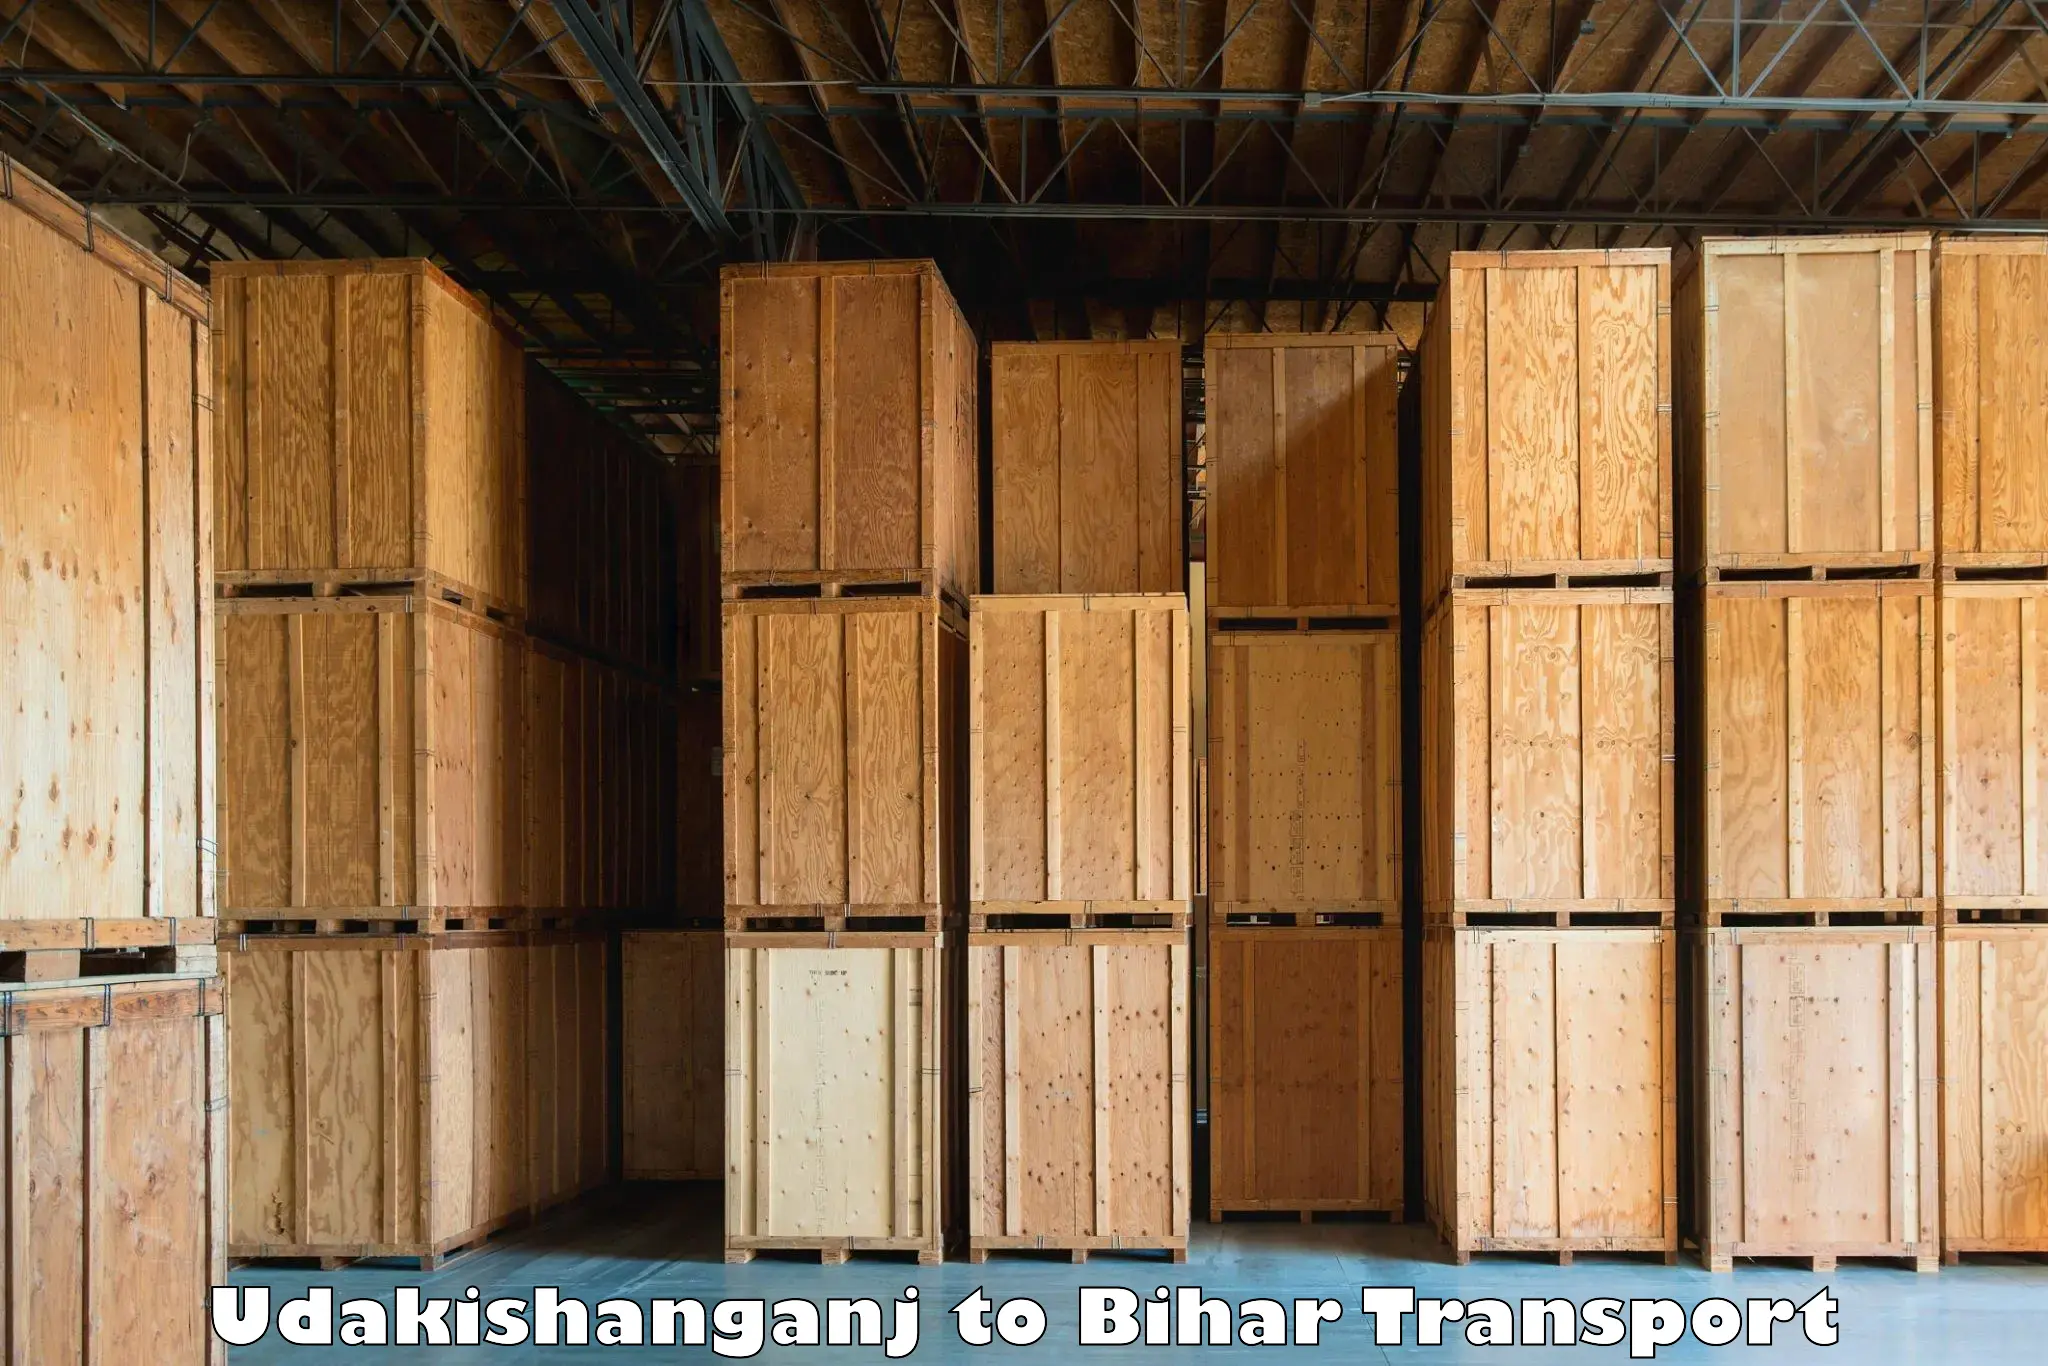 Commercial transport service Udakishanganj to Kaluahi